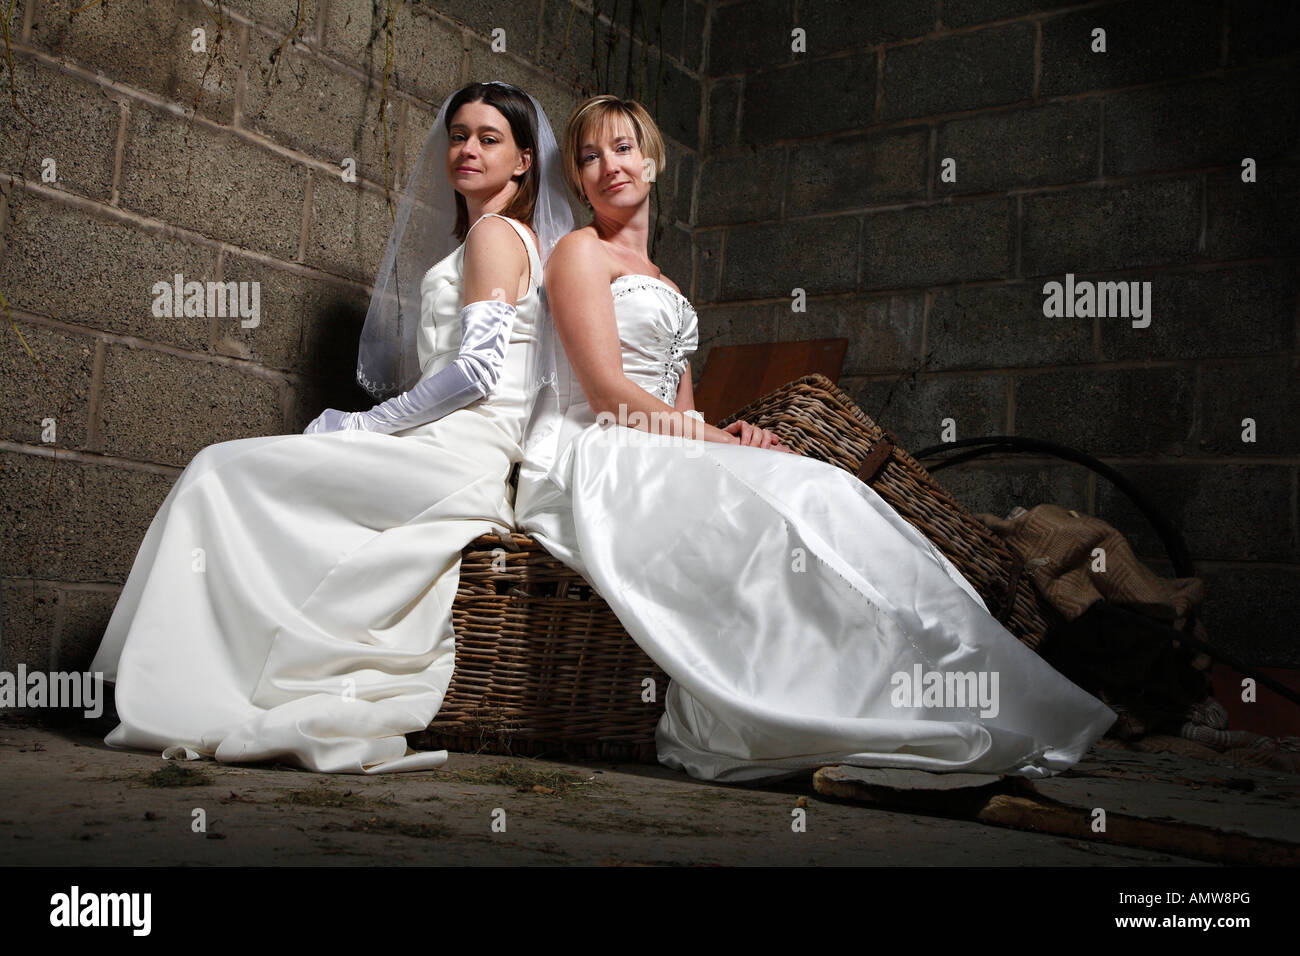 Wedding car decoration bow white -Fotos und -Bildmaterial in hoher  Auflösung – Alamy